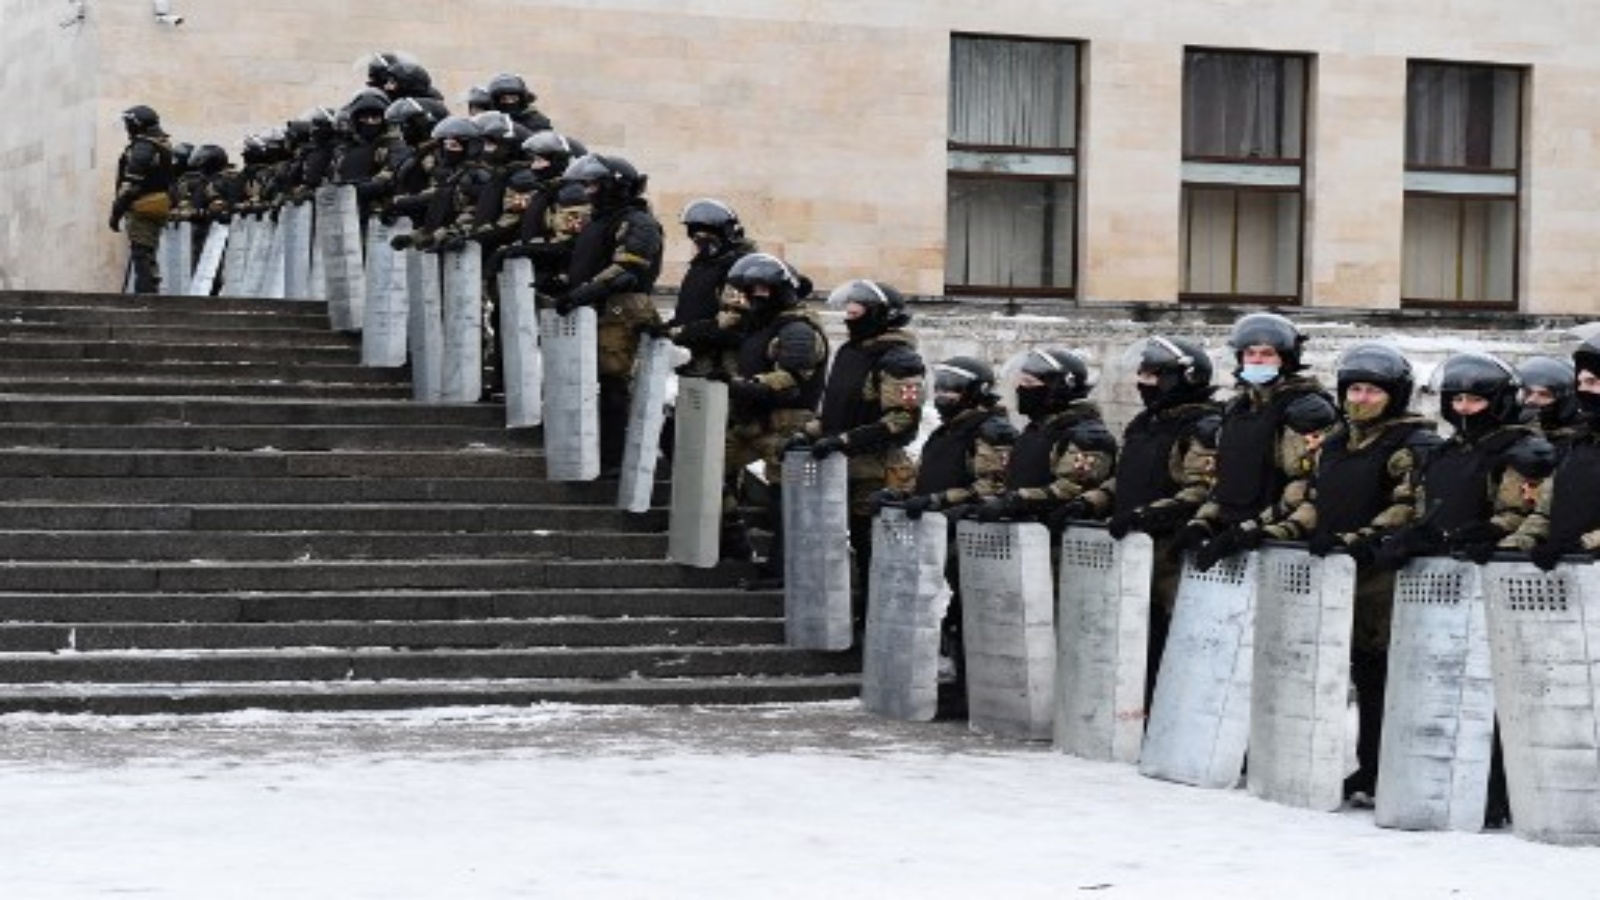 ضباط إنفاذ القانون يغلقون منطقة خلال تجمع حاشد لدعم زعيم المعارضة المسجون أليكسي نافالني في سانت بطرسبرغ في 31 يناير 2021